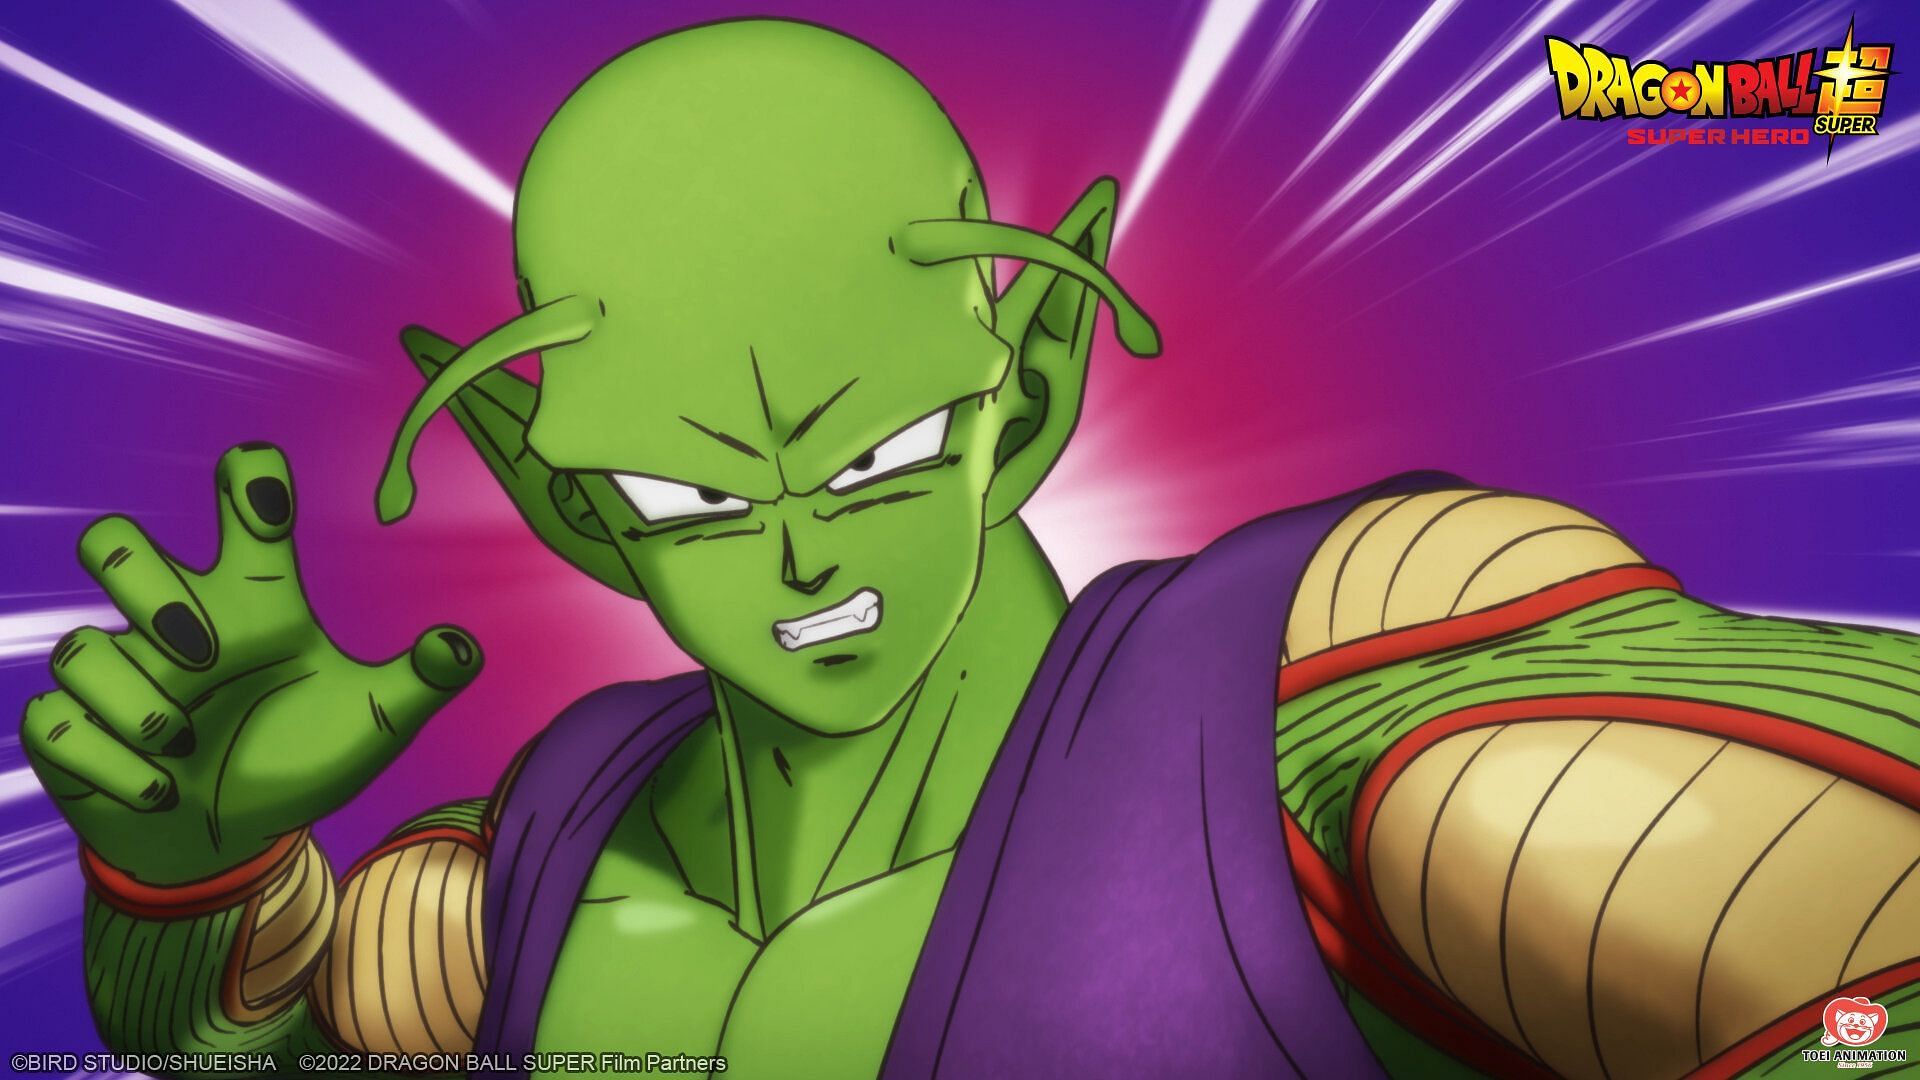 Piccolo in Dragon Ball Super: Super Hero (Image via Toei Animation)